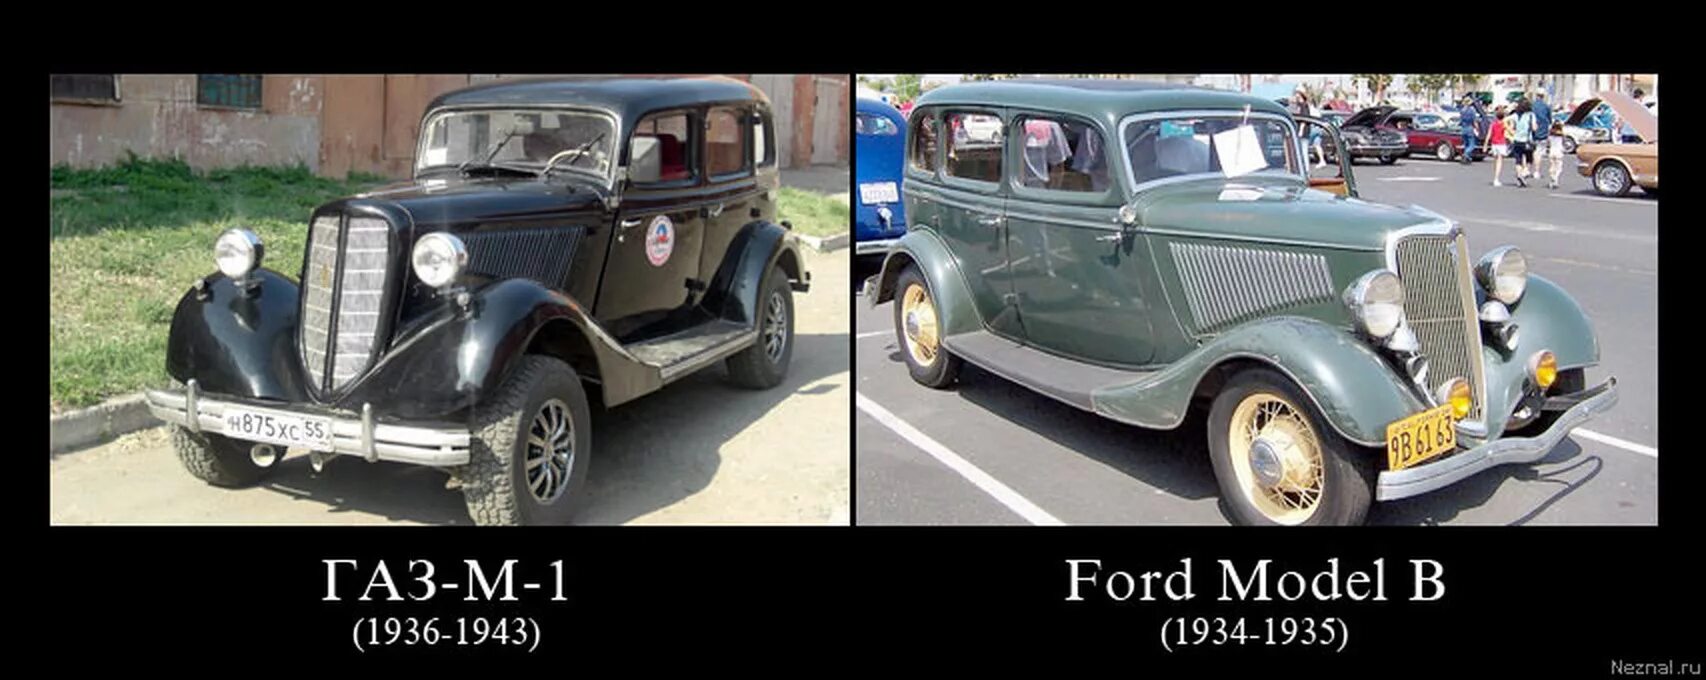 Автомобиль ГАЗ М 1 И Форд. ГАЗ м1 СССР. Ford model b 1934. ГАЗ м1 сравнить с Форд 40. Скопированный газ